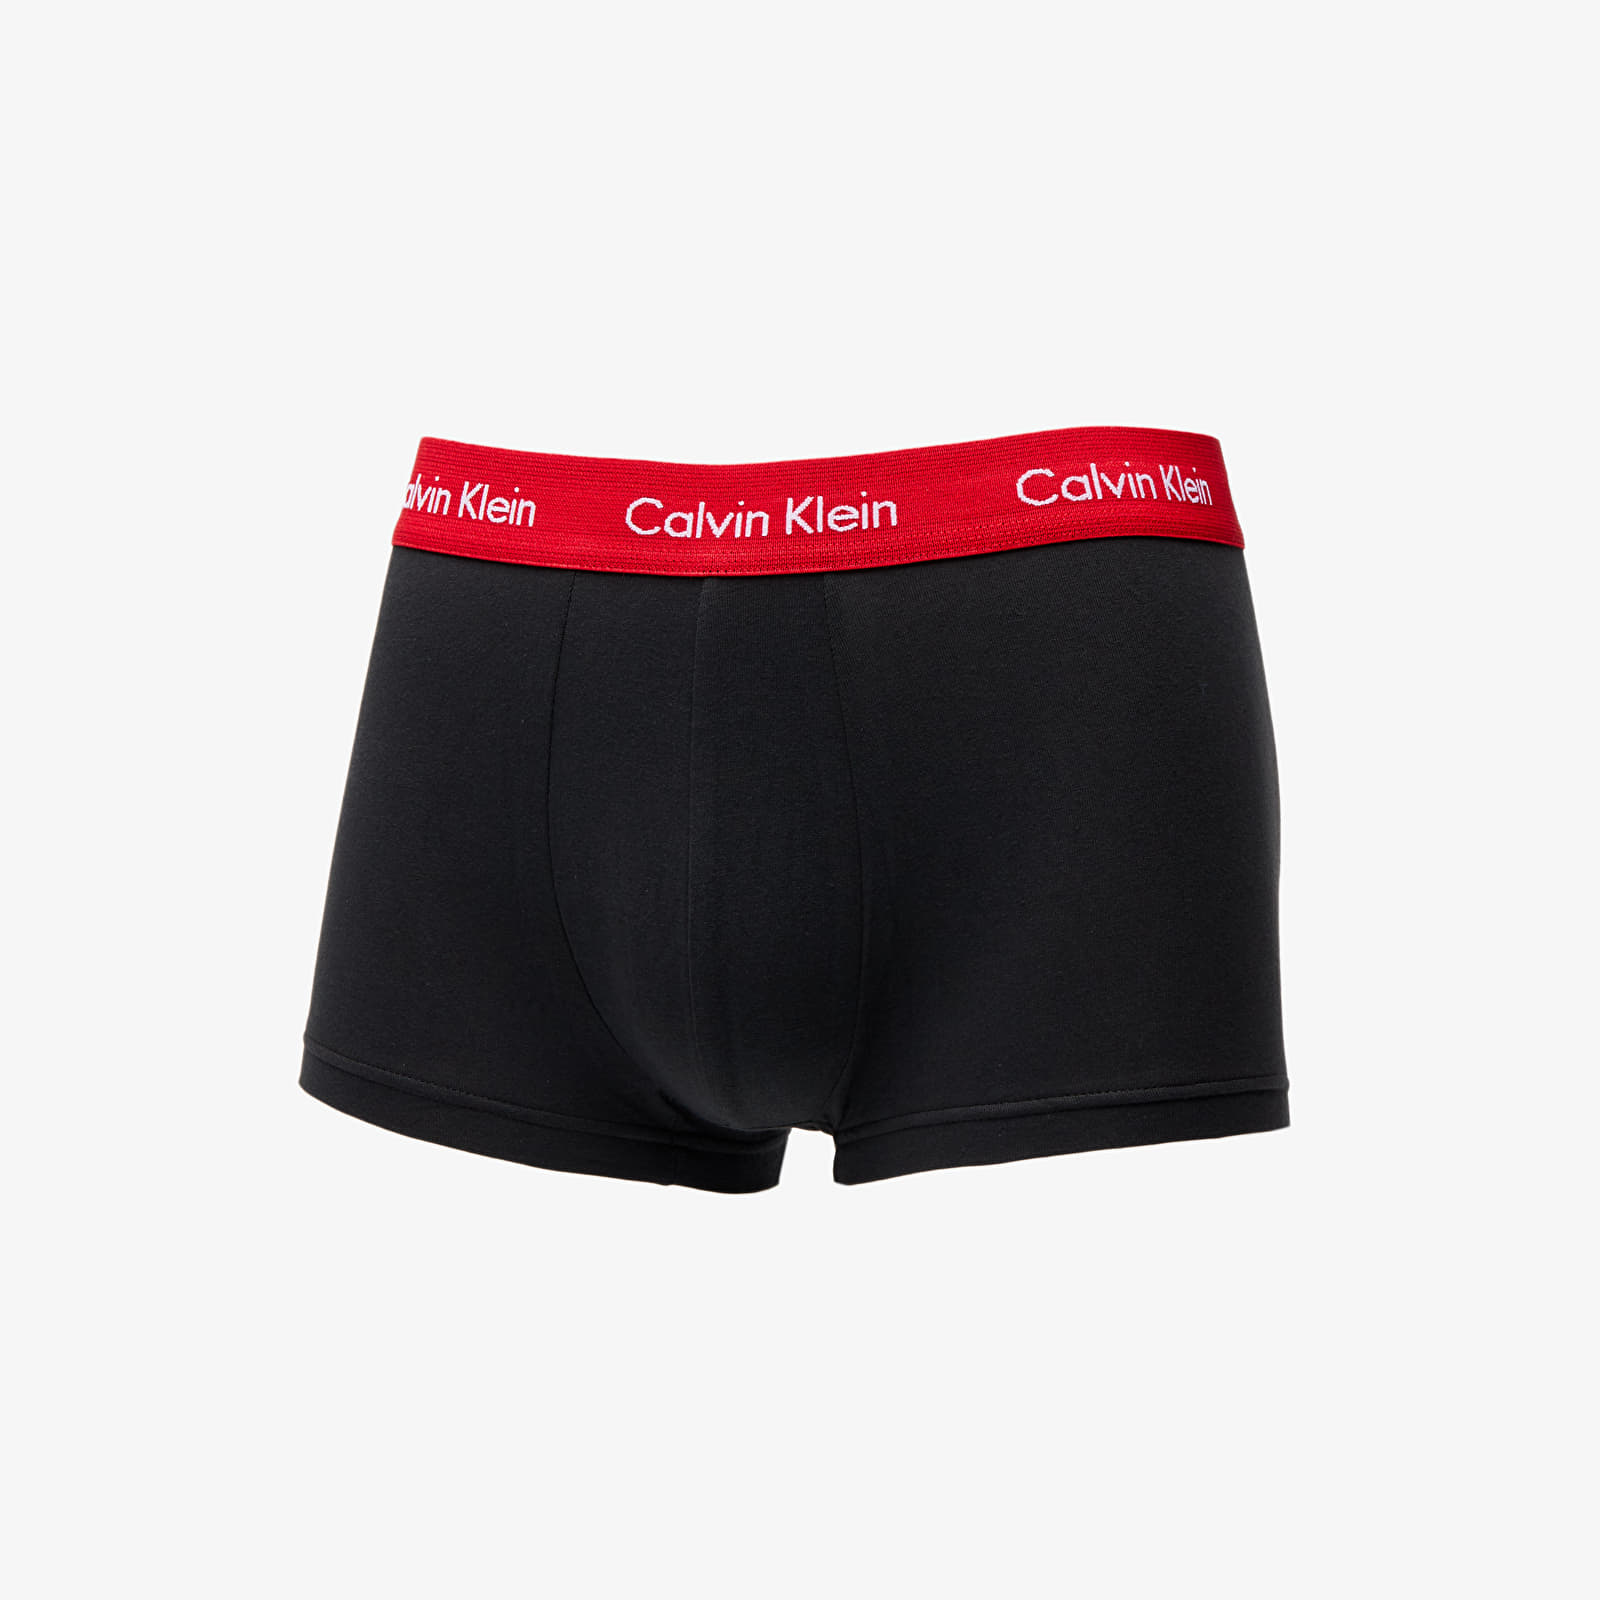 Männerunterwäsche Calvin Klein Low Rise Trunks 3 Pack Navy/ Lush Burgundy/ Red Logo